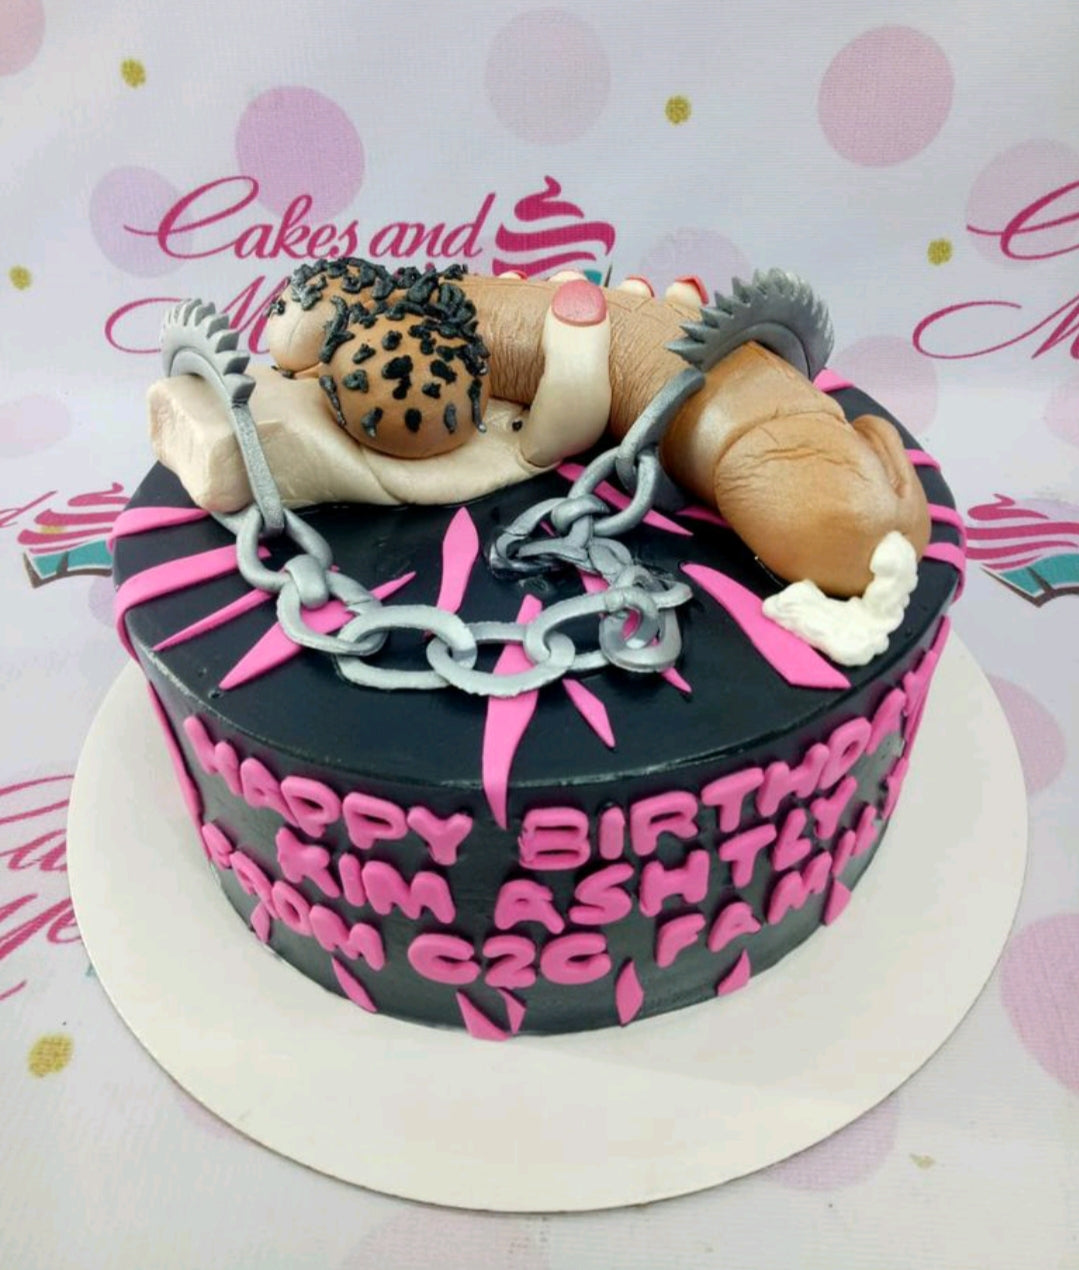 Best Erotic Cakes For Bachelorette Parties - Delish.com